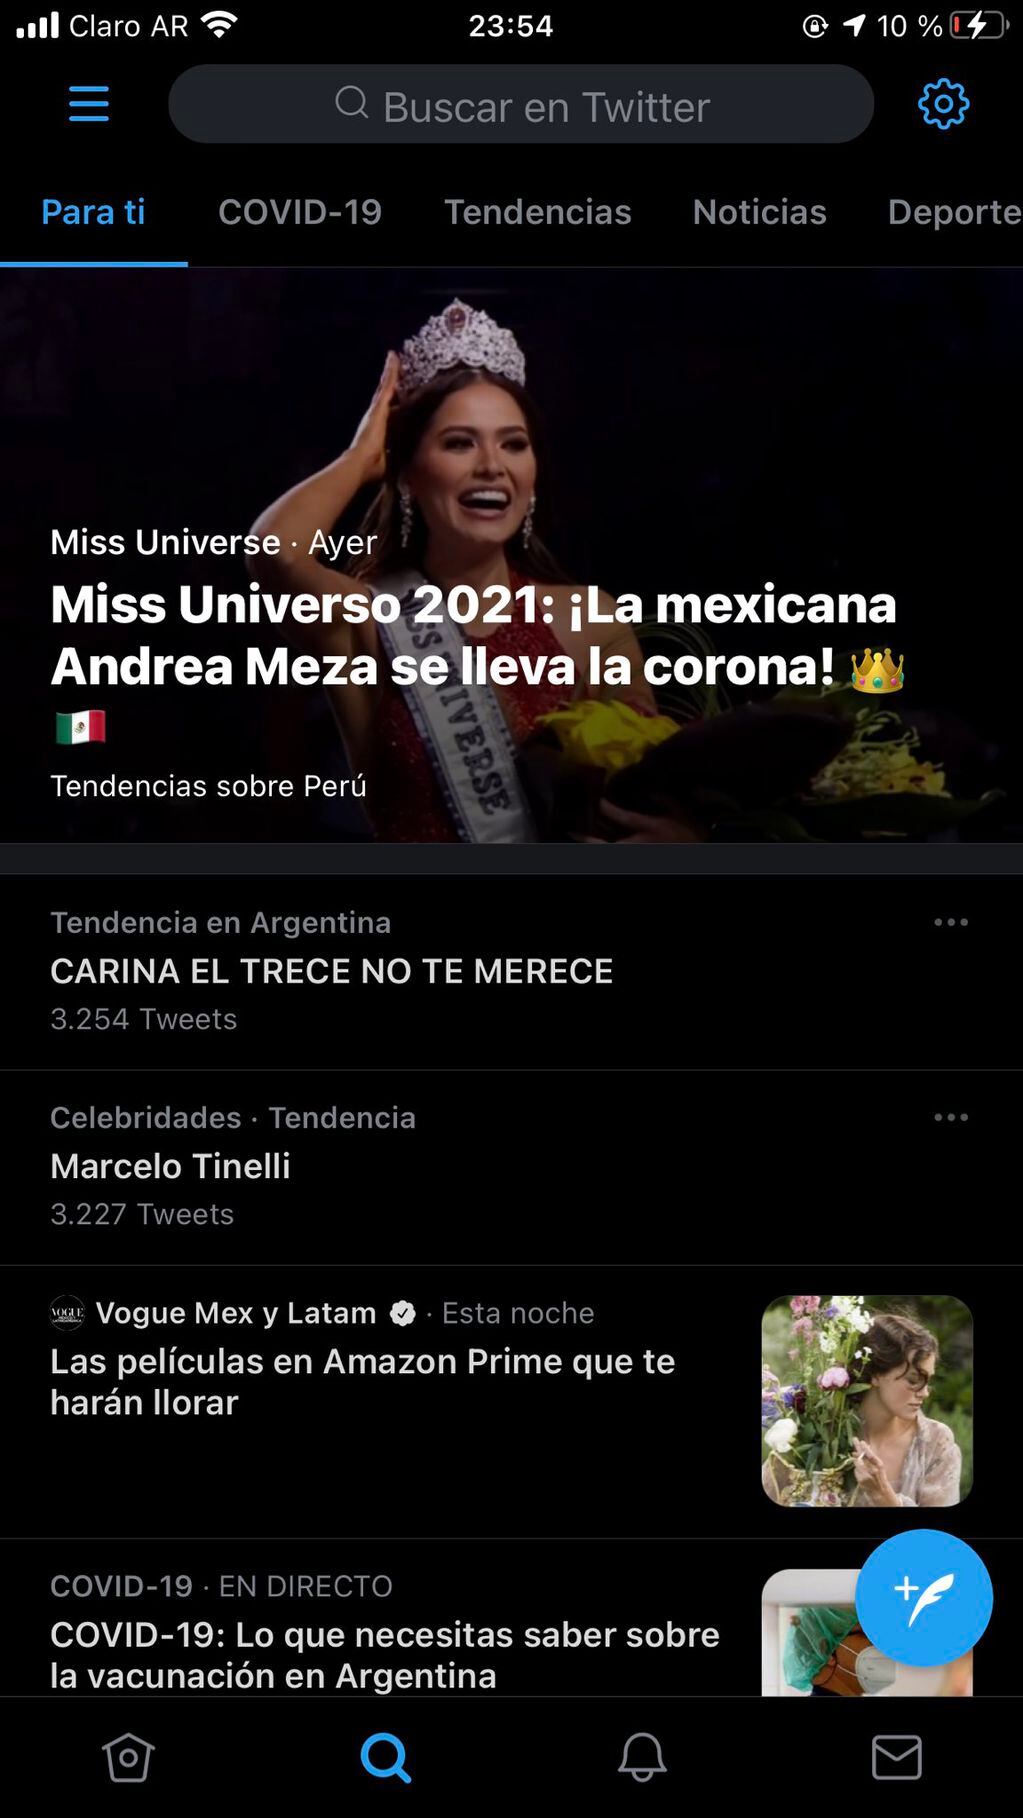 "CARINA EL TRECE NO TE MERECE" fue tendencia en Twitter